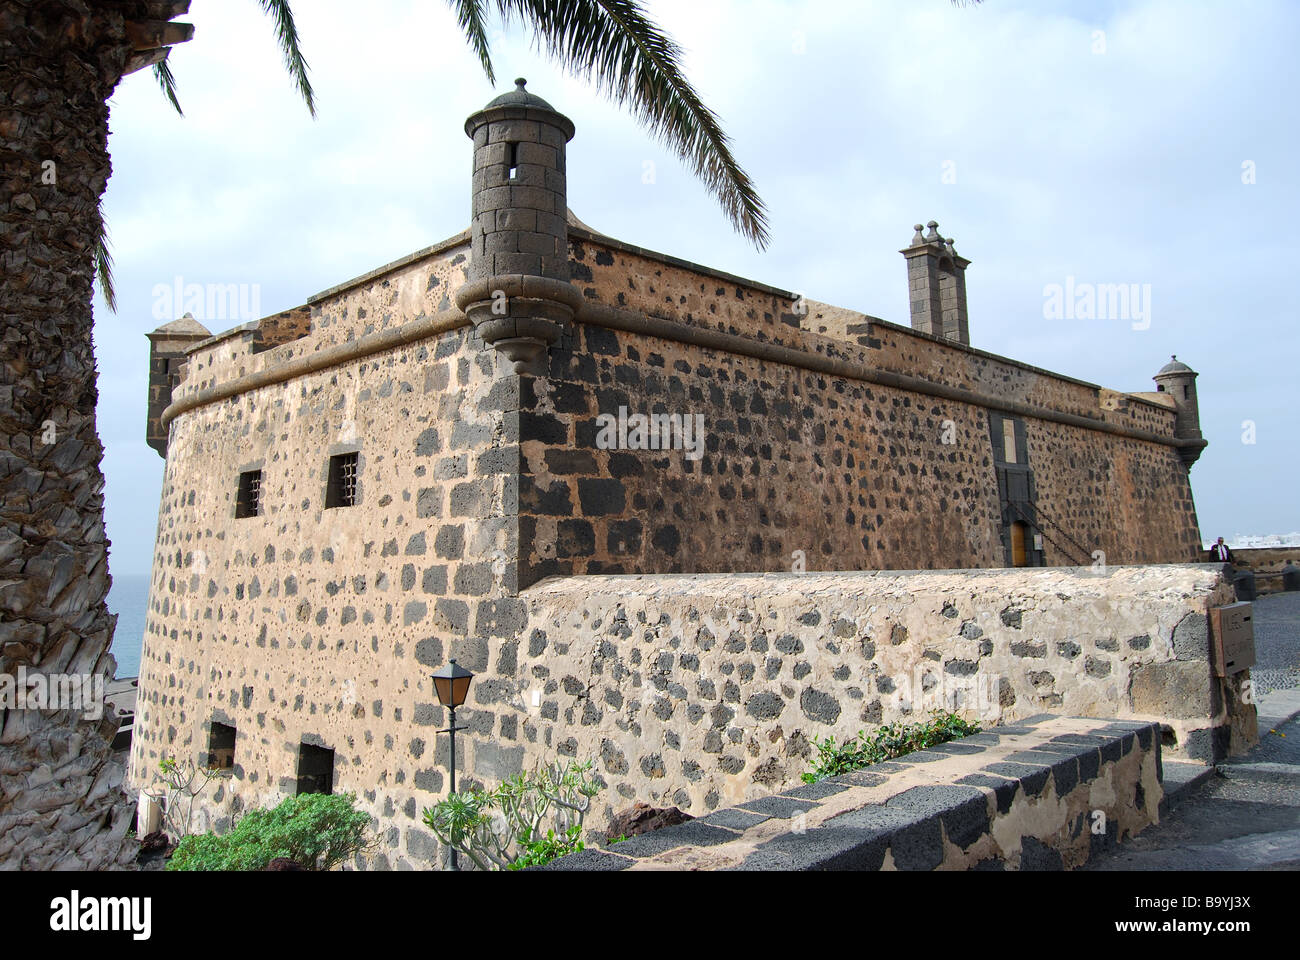 Castillo de San Jose, Arrecife, Lanzarote, Canary Islands, Spain Stock Photo